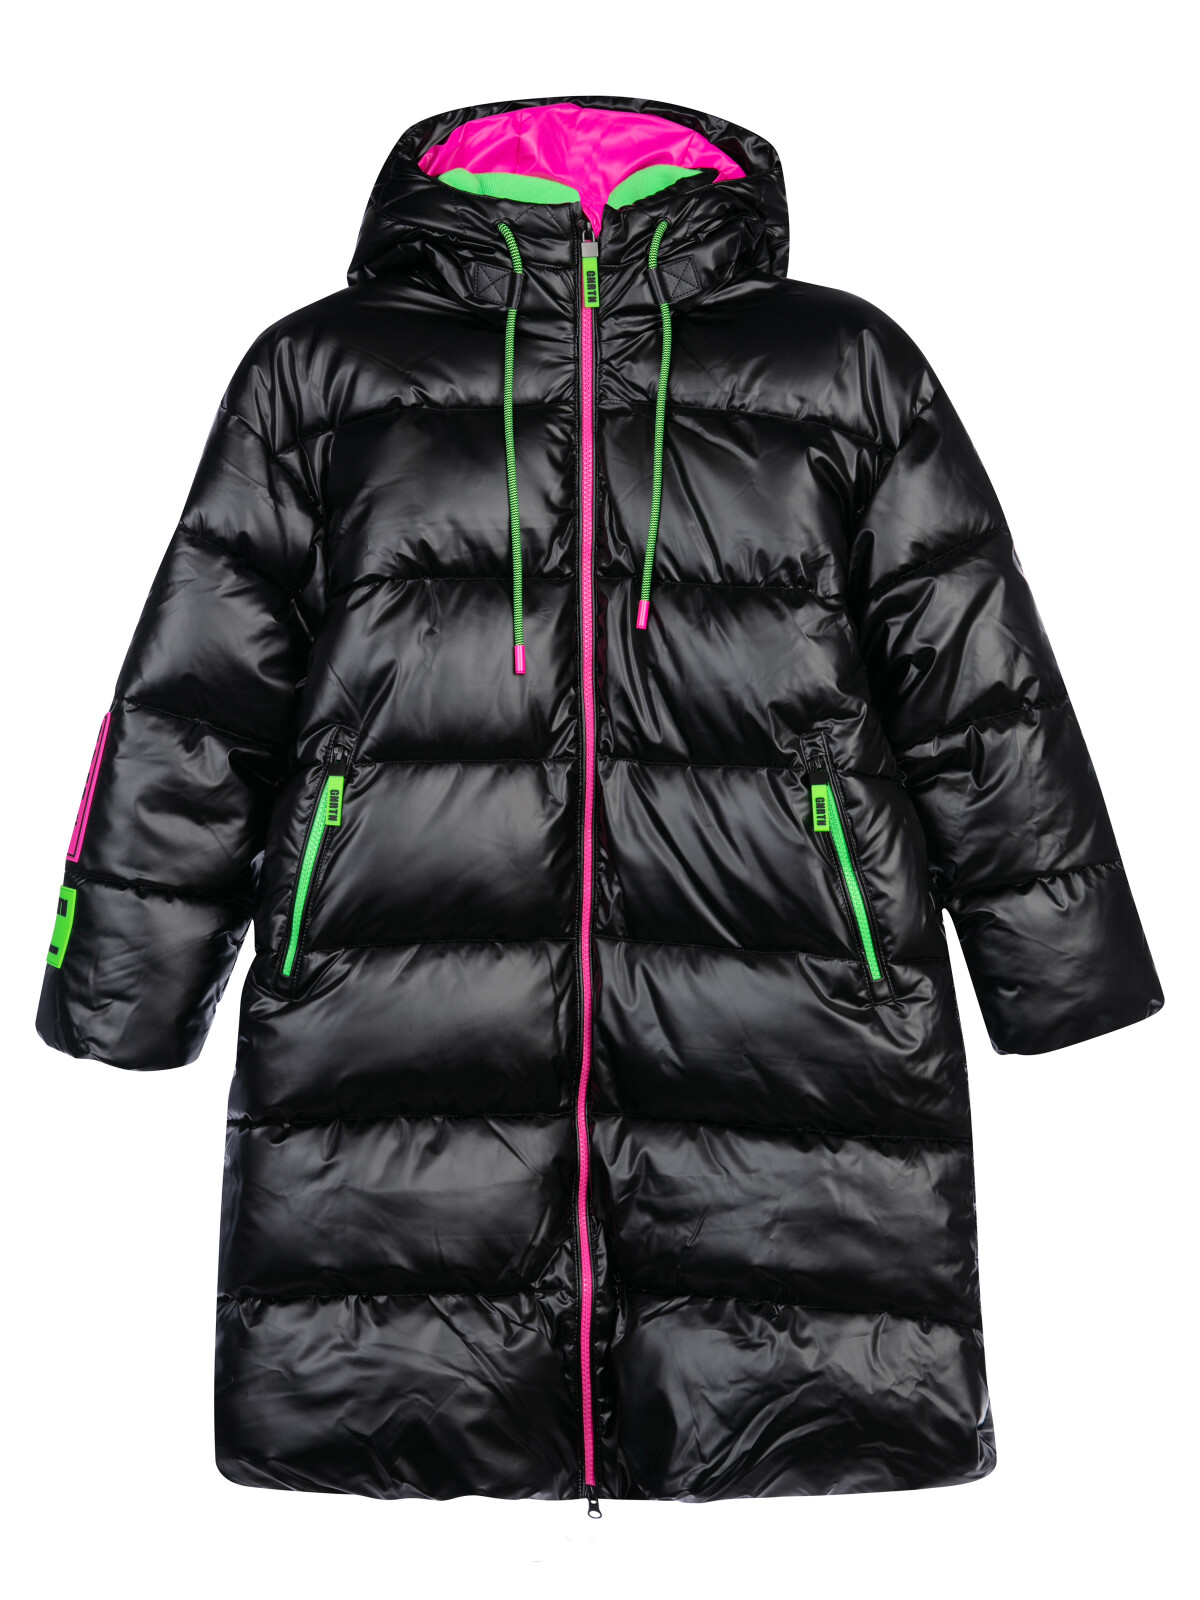 Пальто текстильное с полиуретановым покрытием для девочек PlayToday, черный,цветной, 140